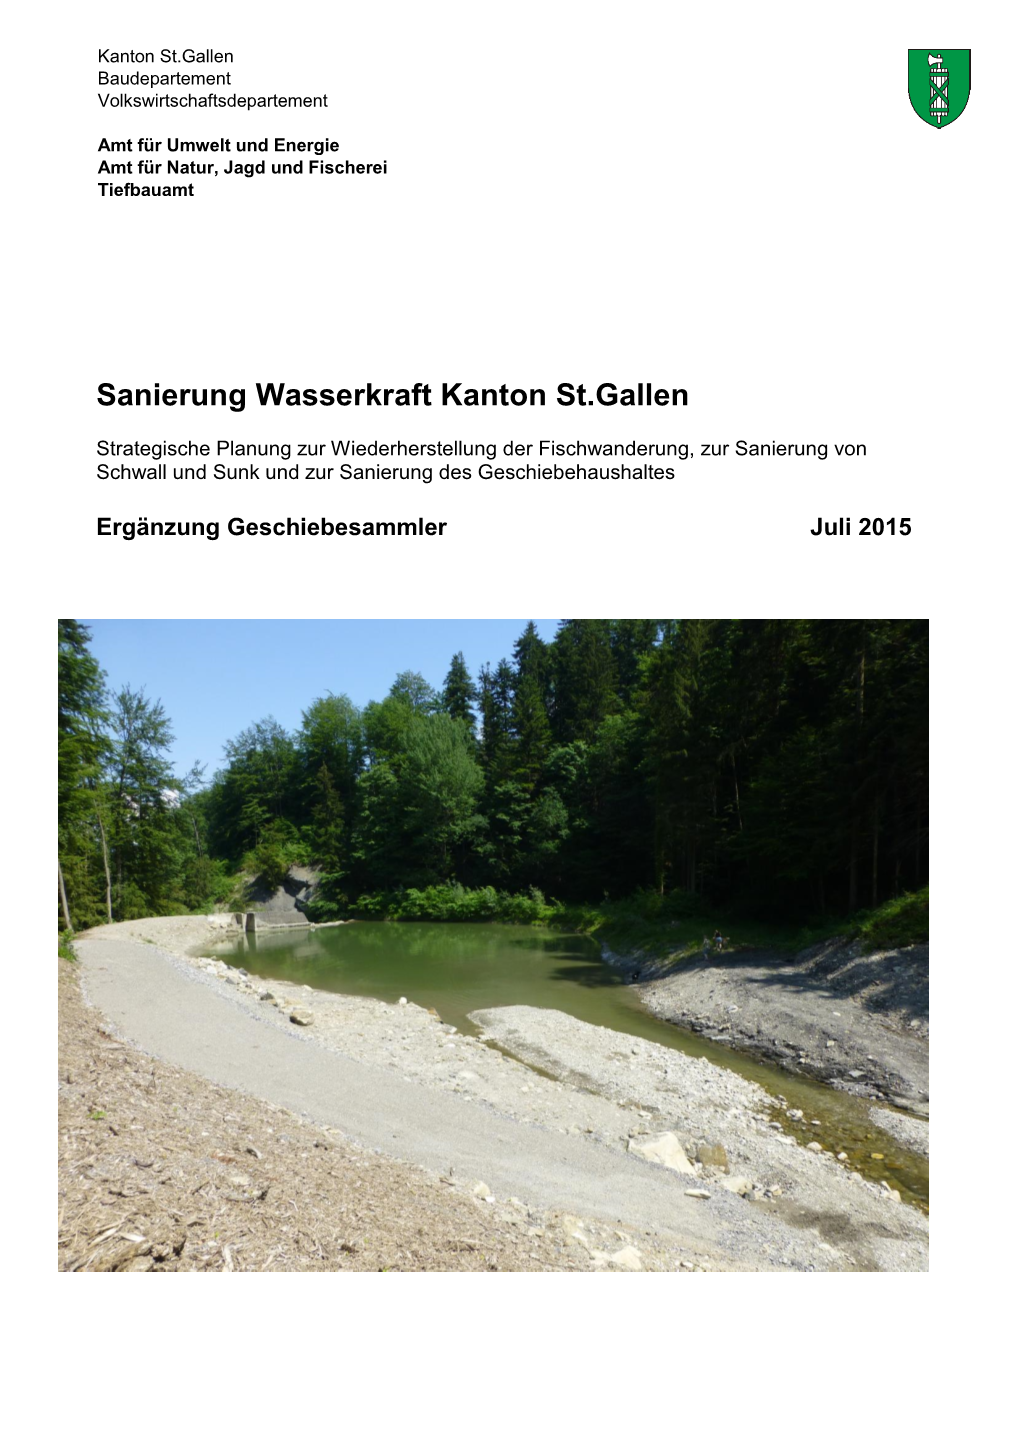 Sanierung Wasserkraft Kanton St.Gallen